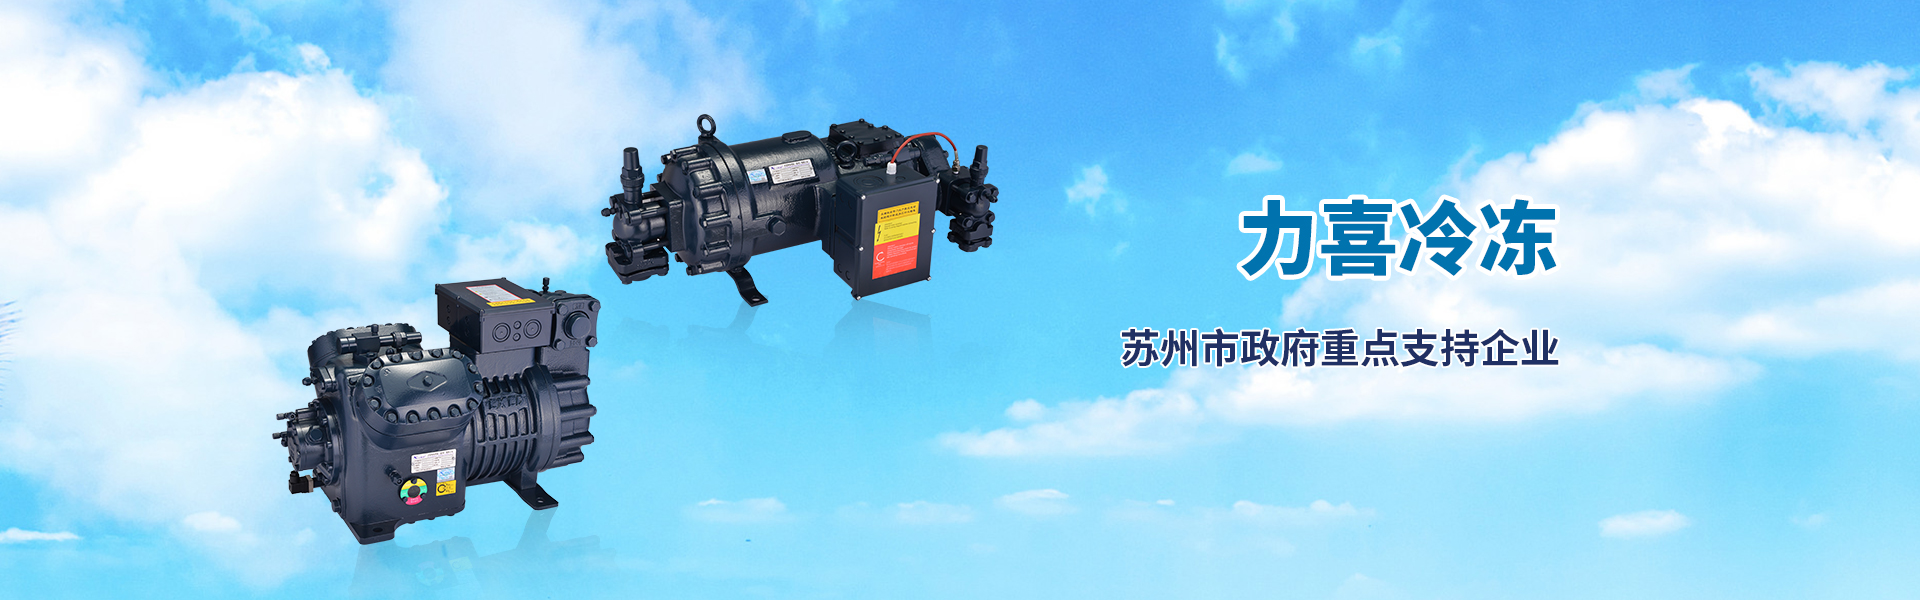 bwin·必赢(中国)唯一官方网站_产品8897